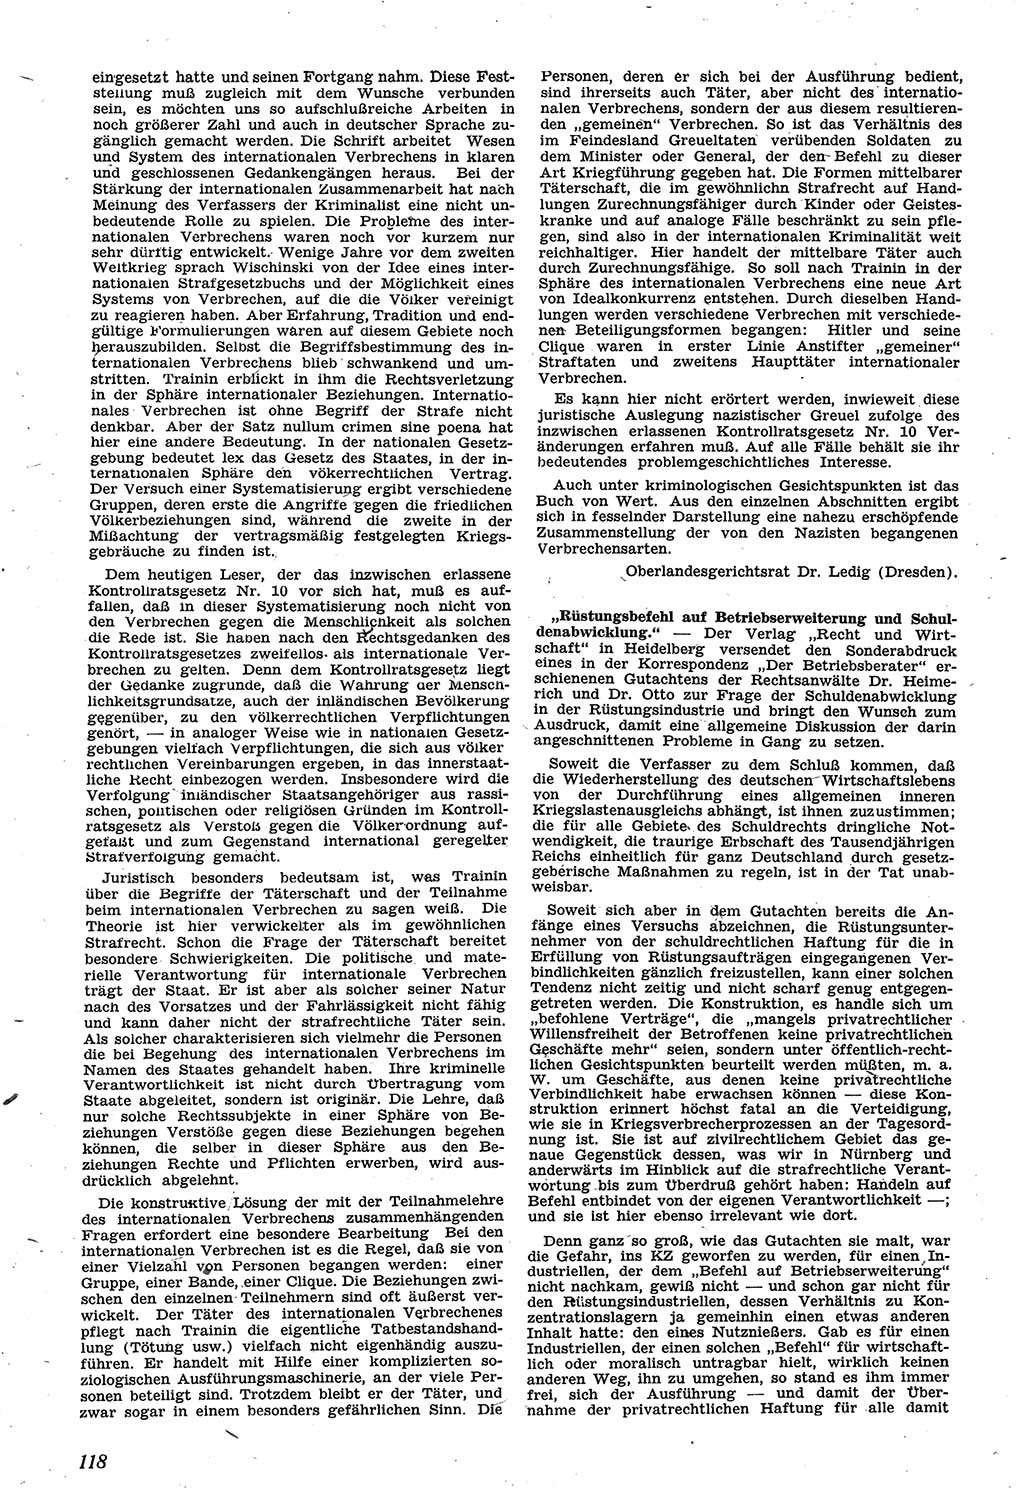 Neue Justiz (NJ), Zeitschrift für Recht und Rechtswissenschaft [Sowjetische Besatzungszone (SBZ) Deutschland], 1. Jahrgang 1947, Seite 118 (NJ SBZ Dtl. 1947, S. 118)